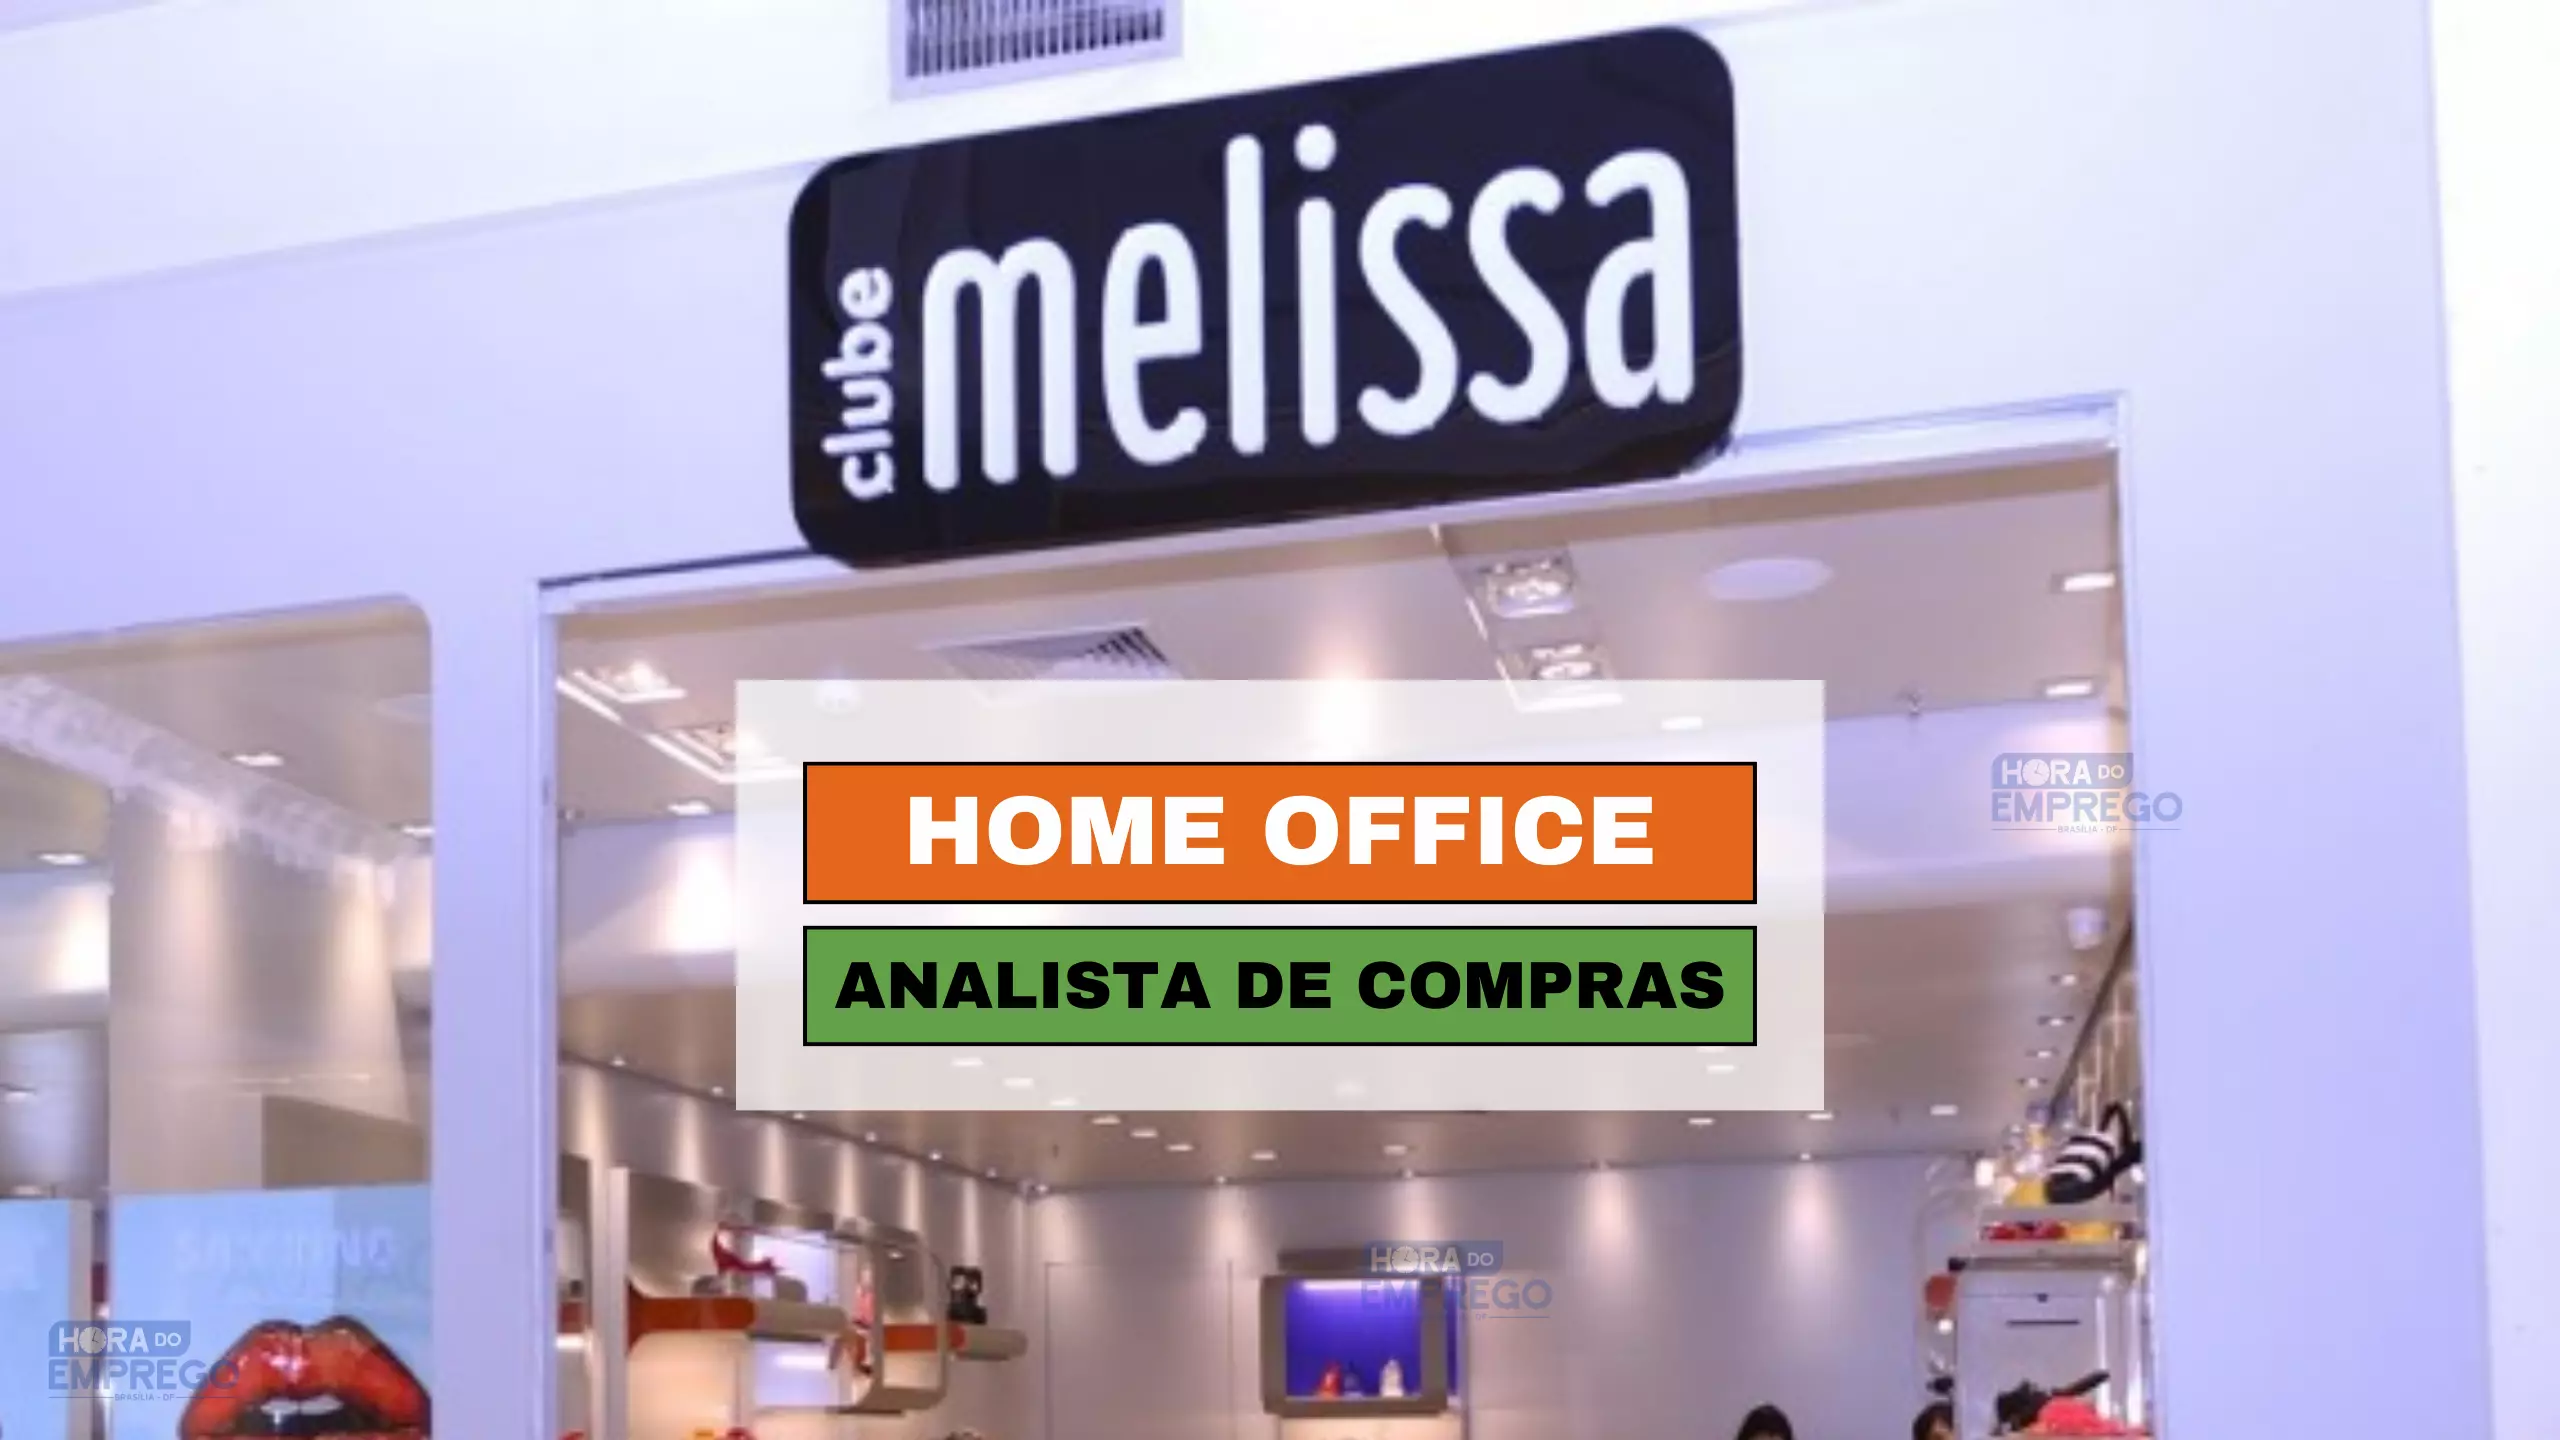 Franquias Melissa abre vagas HOME OFFICE para Analista de Compras e Merchandising I 